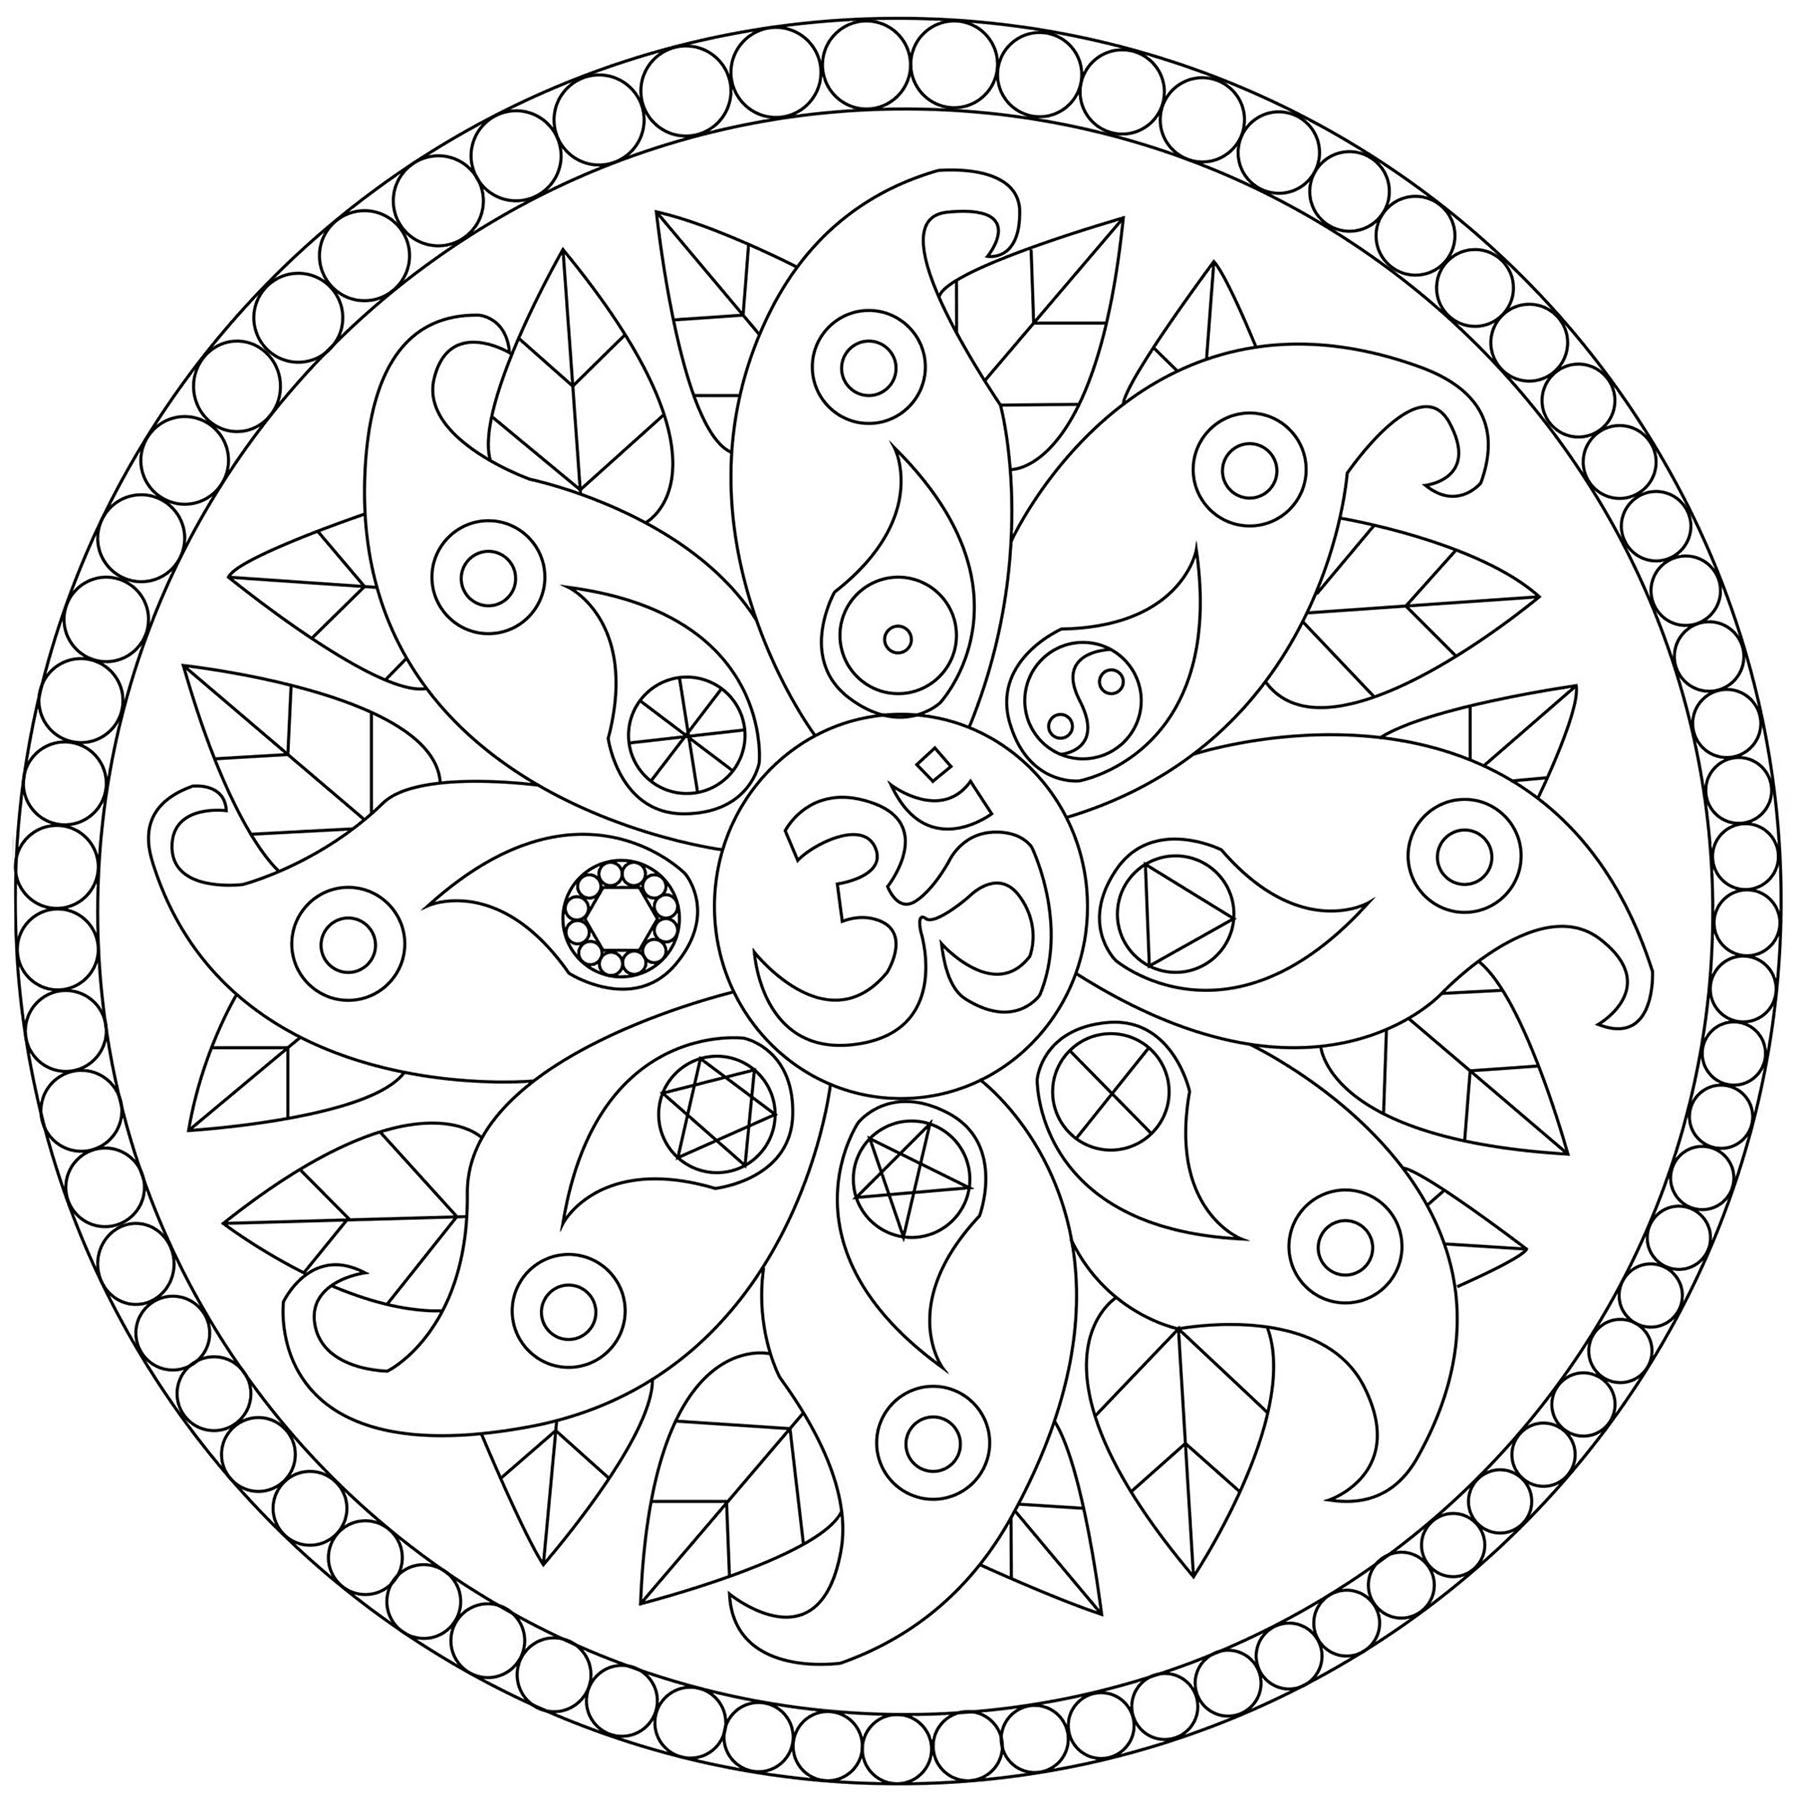 Um Mandala com motivos vegetais e vários símbolos tais como Yin & Yang, Artista : Caillou